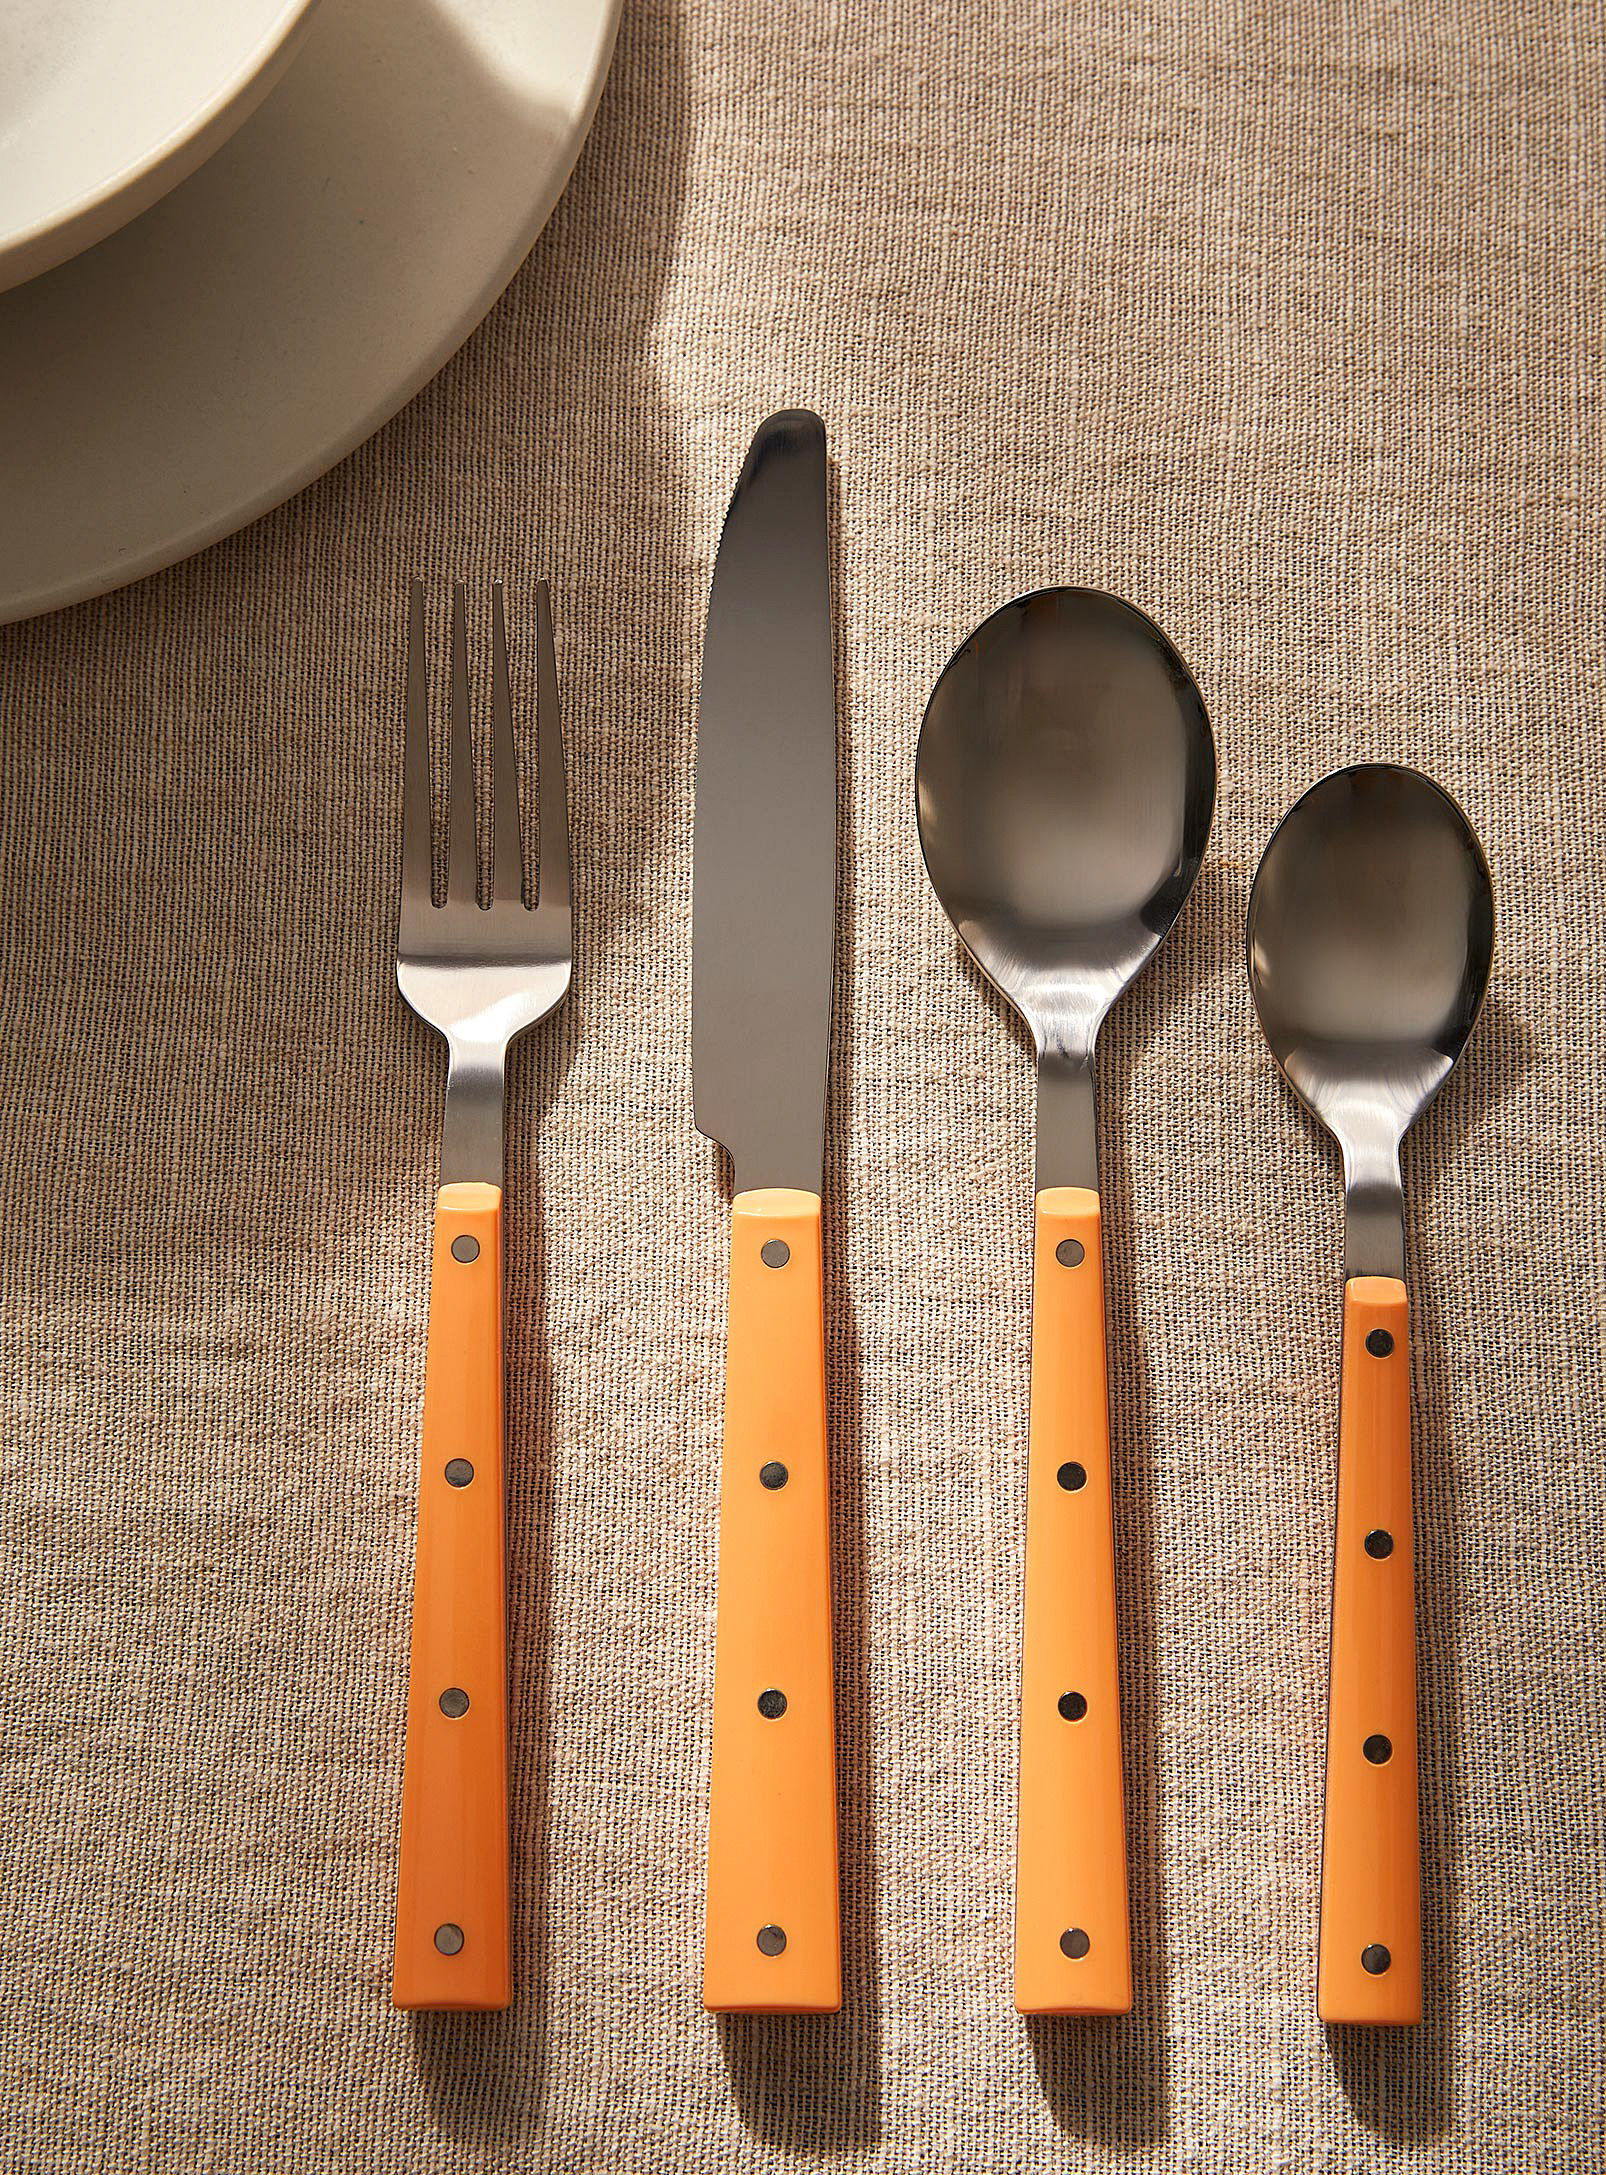 Simons Maison - Mandarin utensils Set of 16